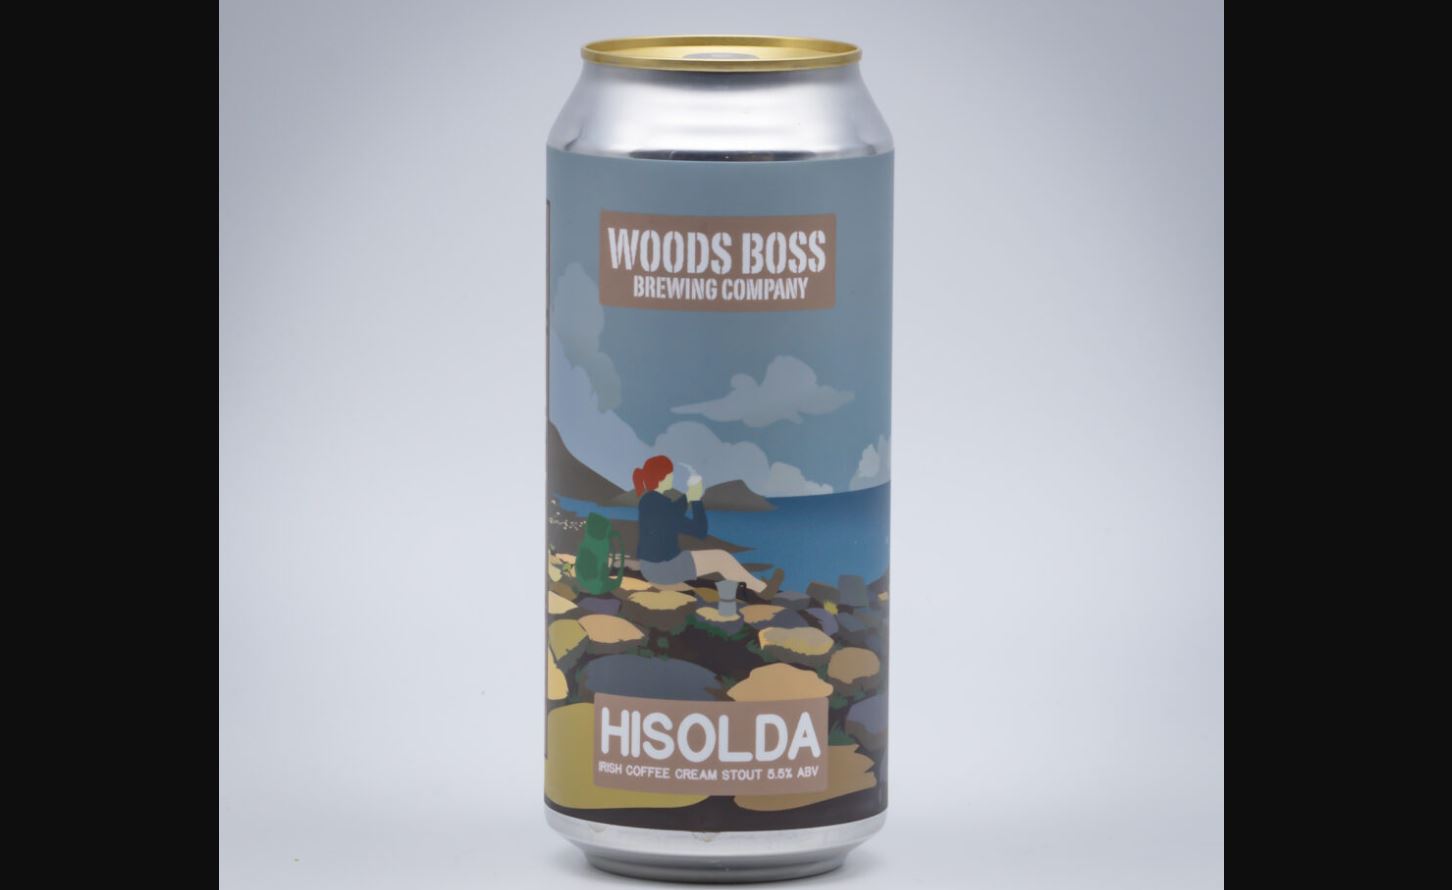 Woods Boss Hisolda Irish Coffee Cream Stout